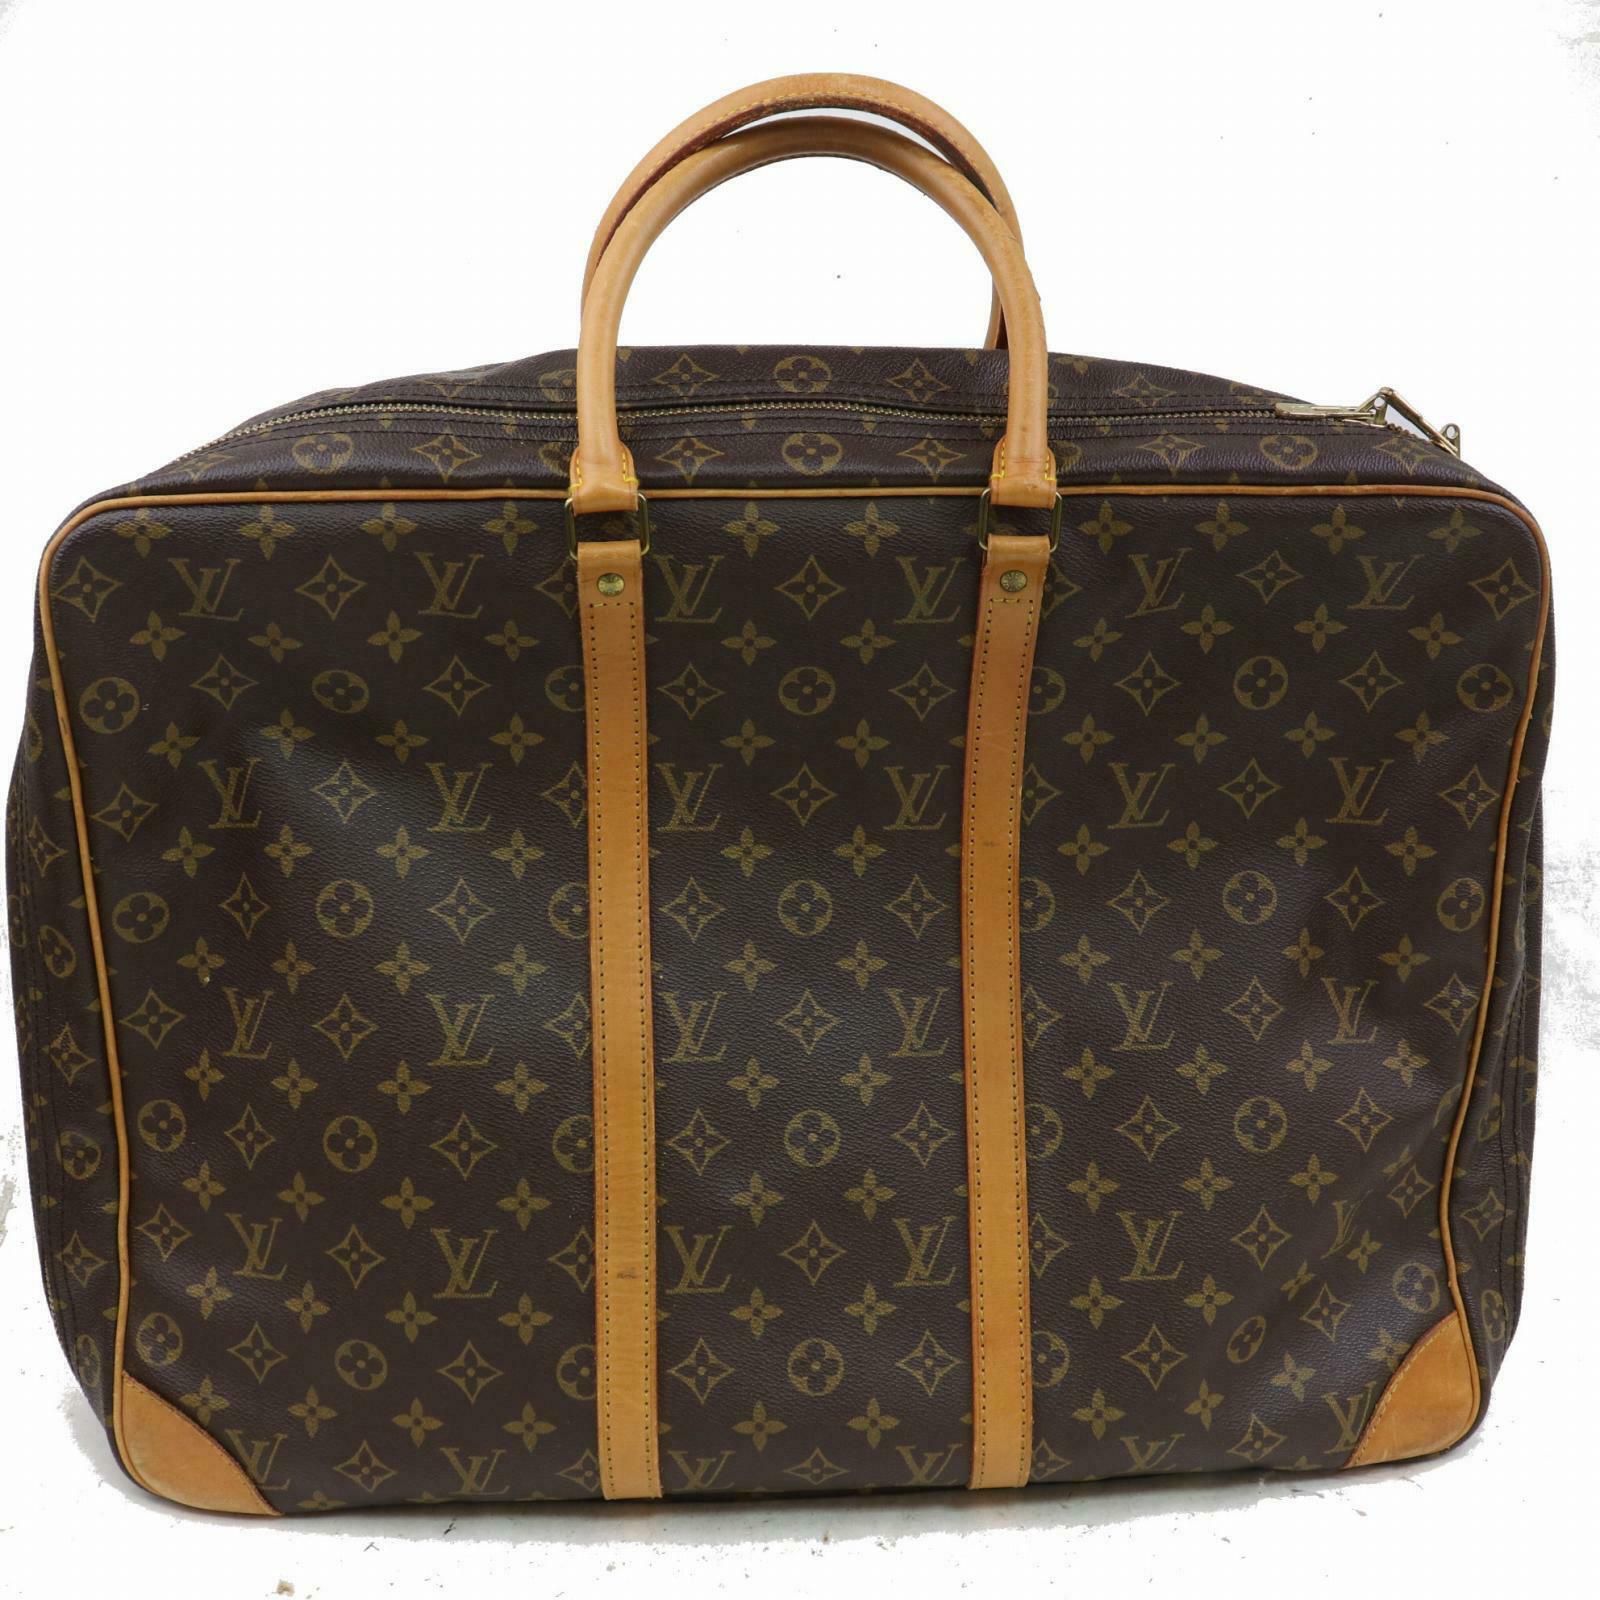 Authentic Louis Vuitton Sirius 50 M41406 Brown Monogram Travel Bag 11317